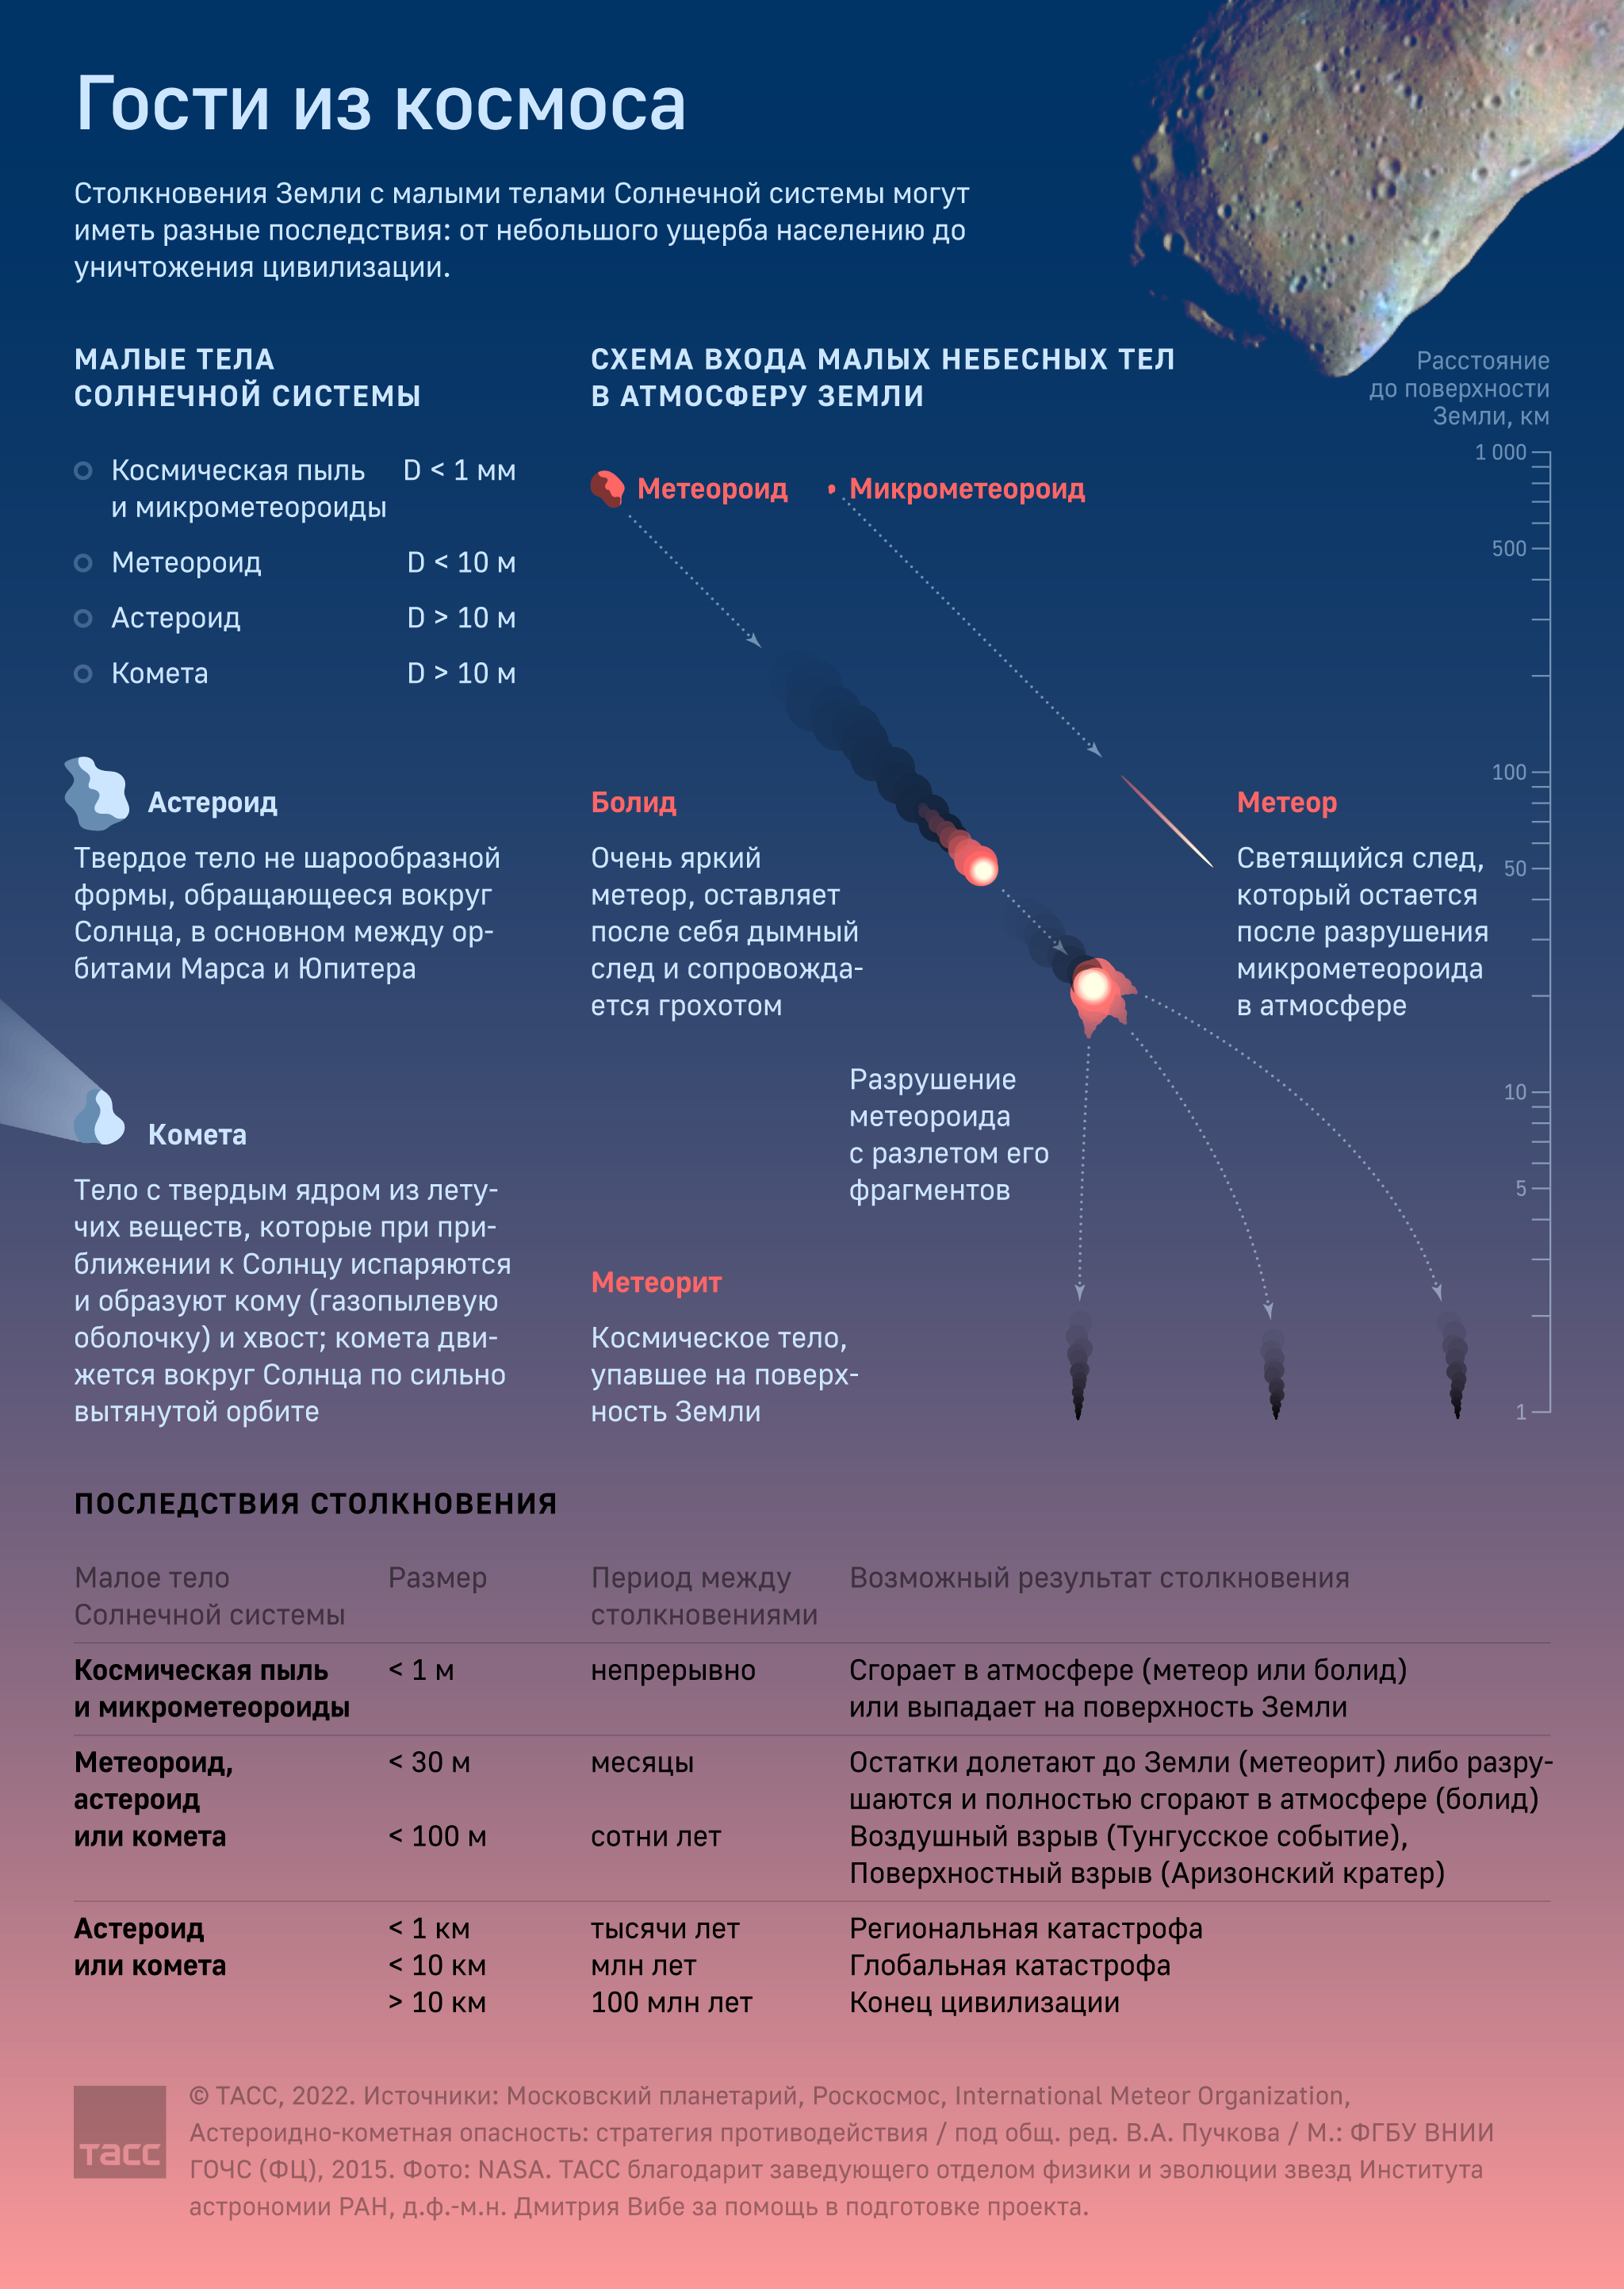 Астероиды, кометы и метеороиды: чем отличаются малые тела Солнечной системы